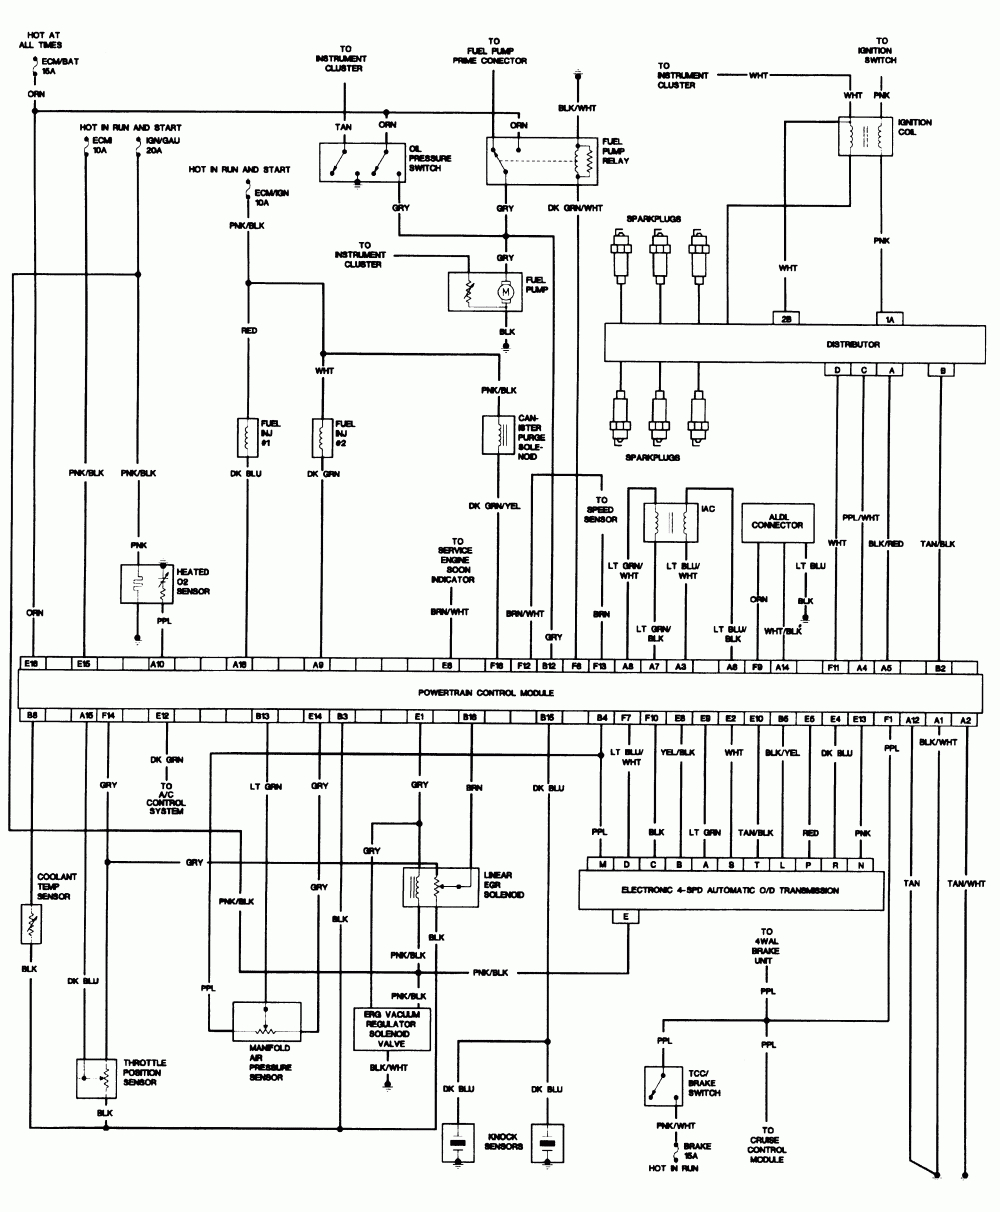 4 Wire 220 Volt Wiring Diagram | Wiring Diagram